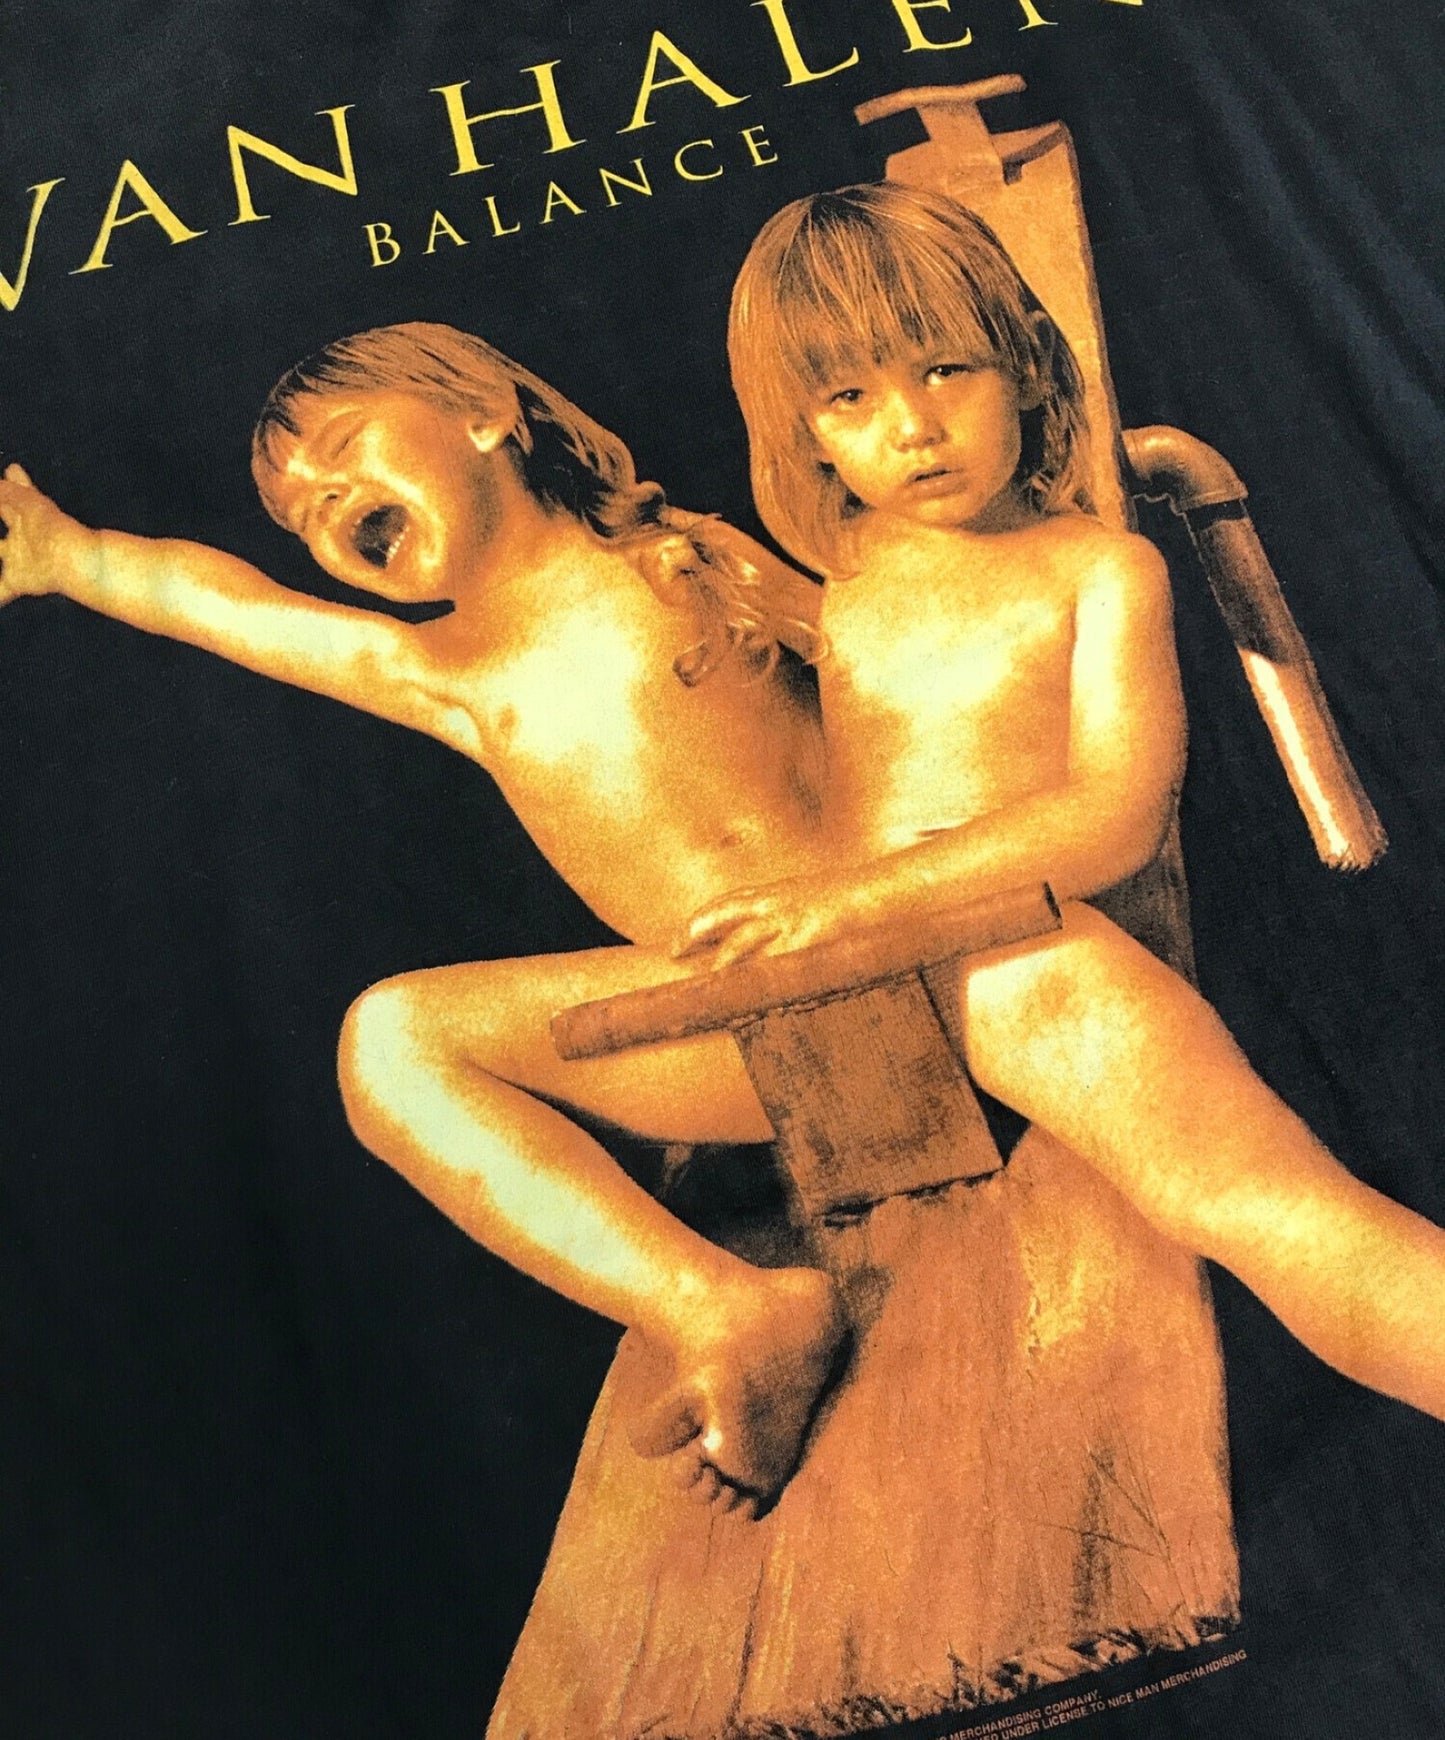 バンド t v [빈티지] 90 년대 Vanhalen 밴드 티셔츠